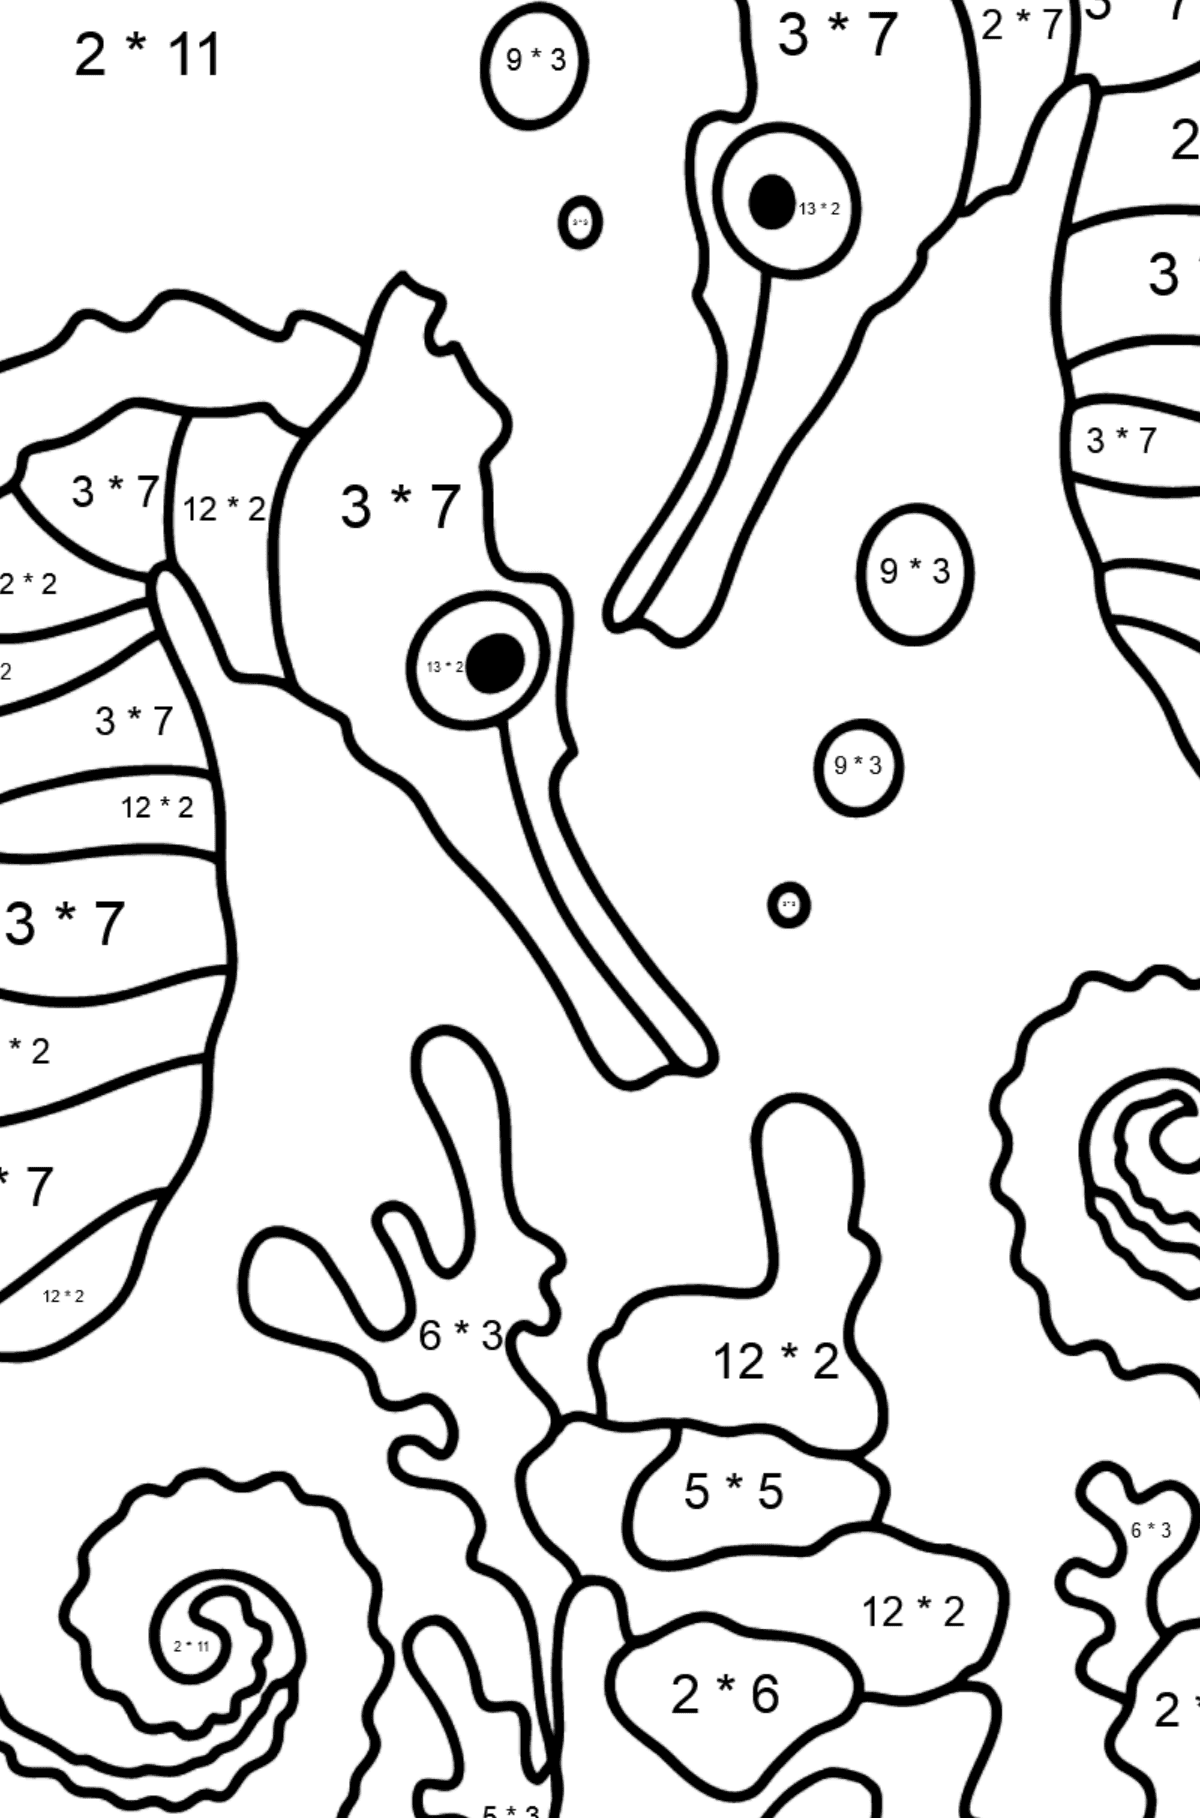 Dibujos para colorear caballitos de mar (difícil) - Colorear con Matemáticas - Multiplicaciones para Niños